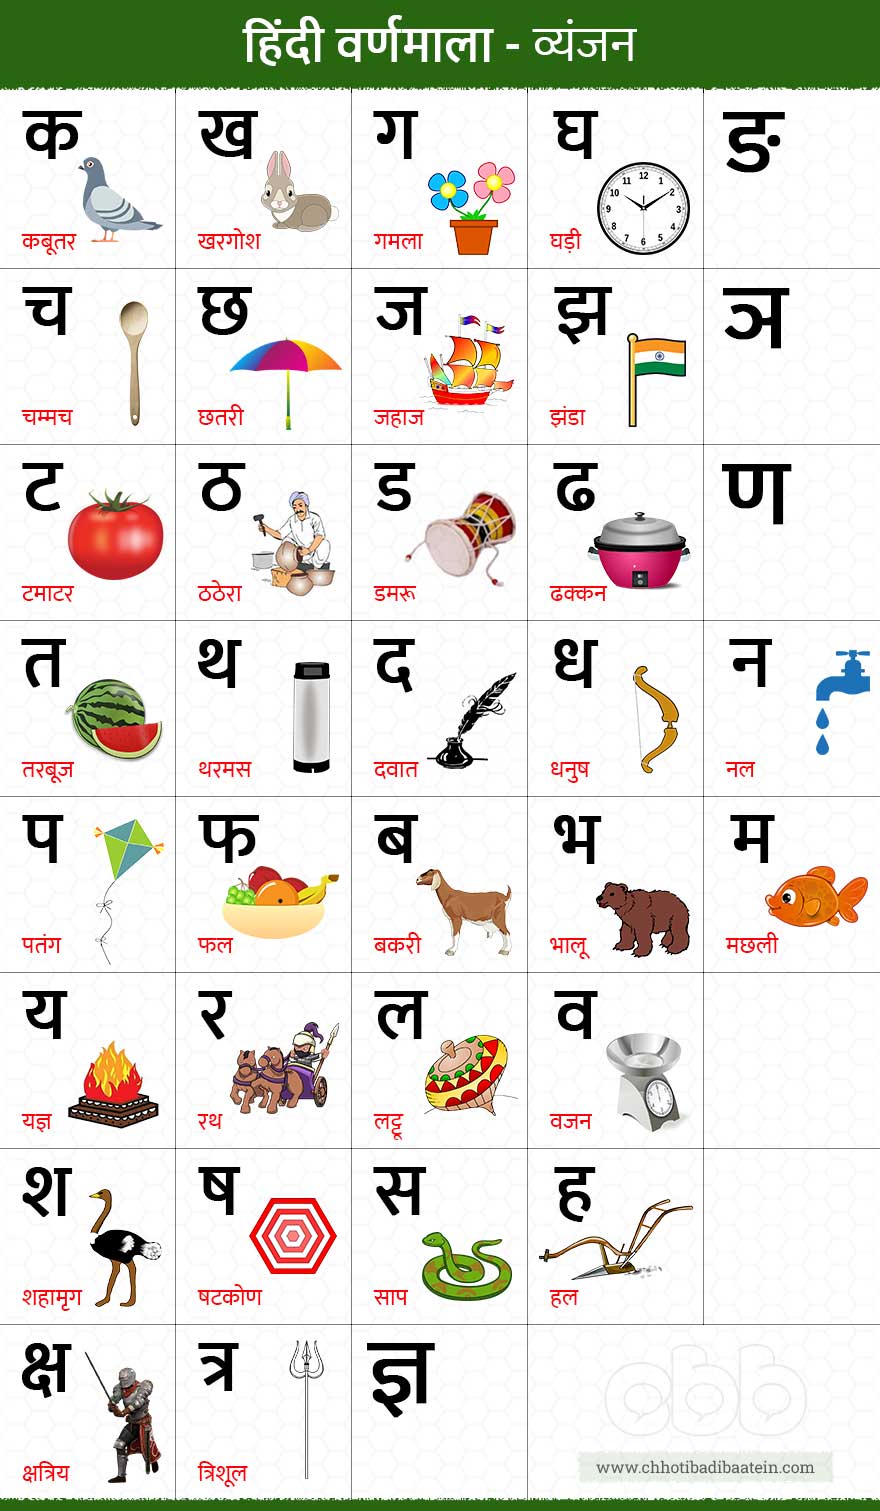 हिंदी वर्णमाला स्वर और व्यंजन - Hindi Alphabet (Varnamala)